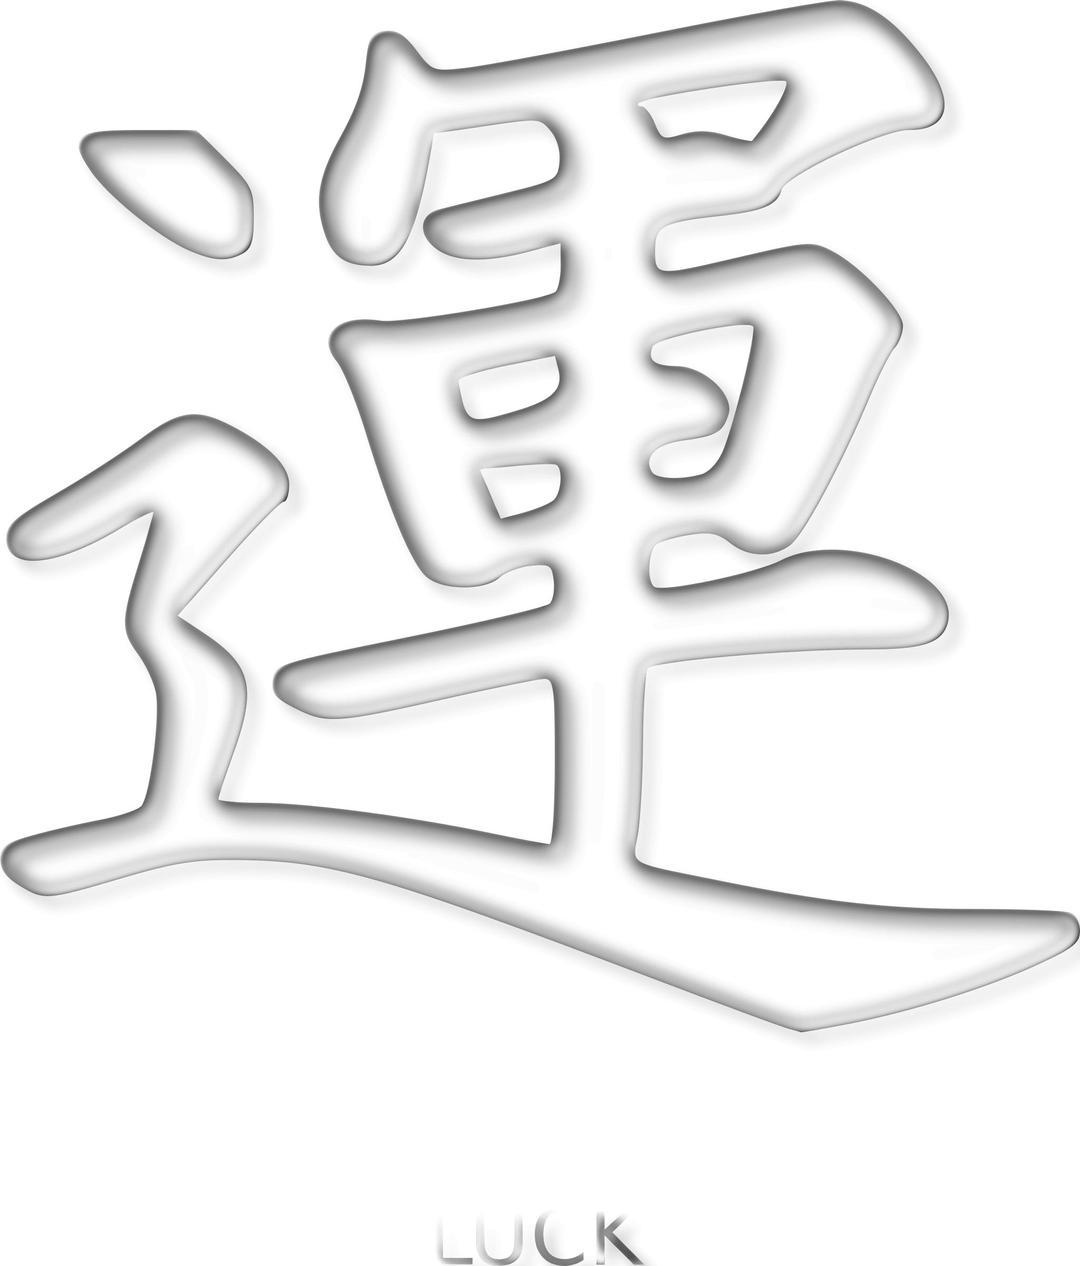 luck kanji png transparent